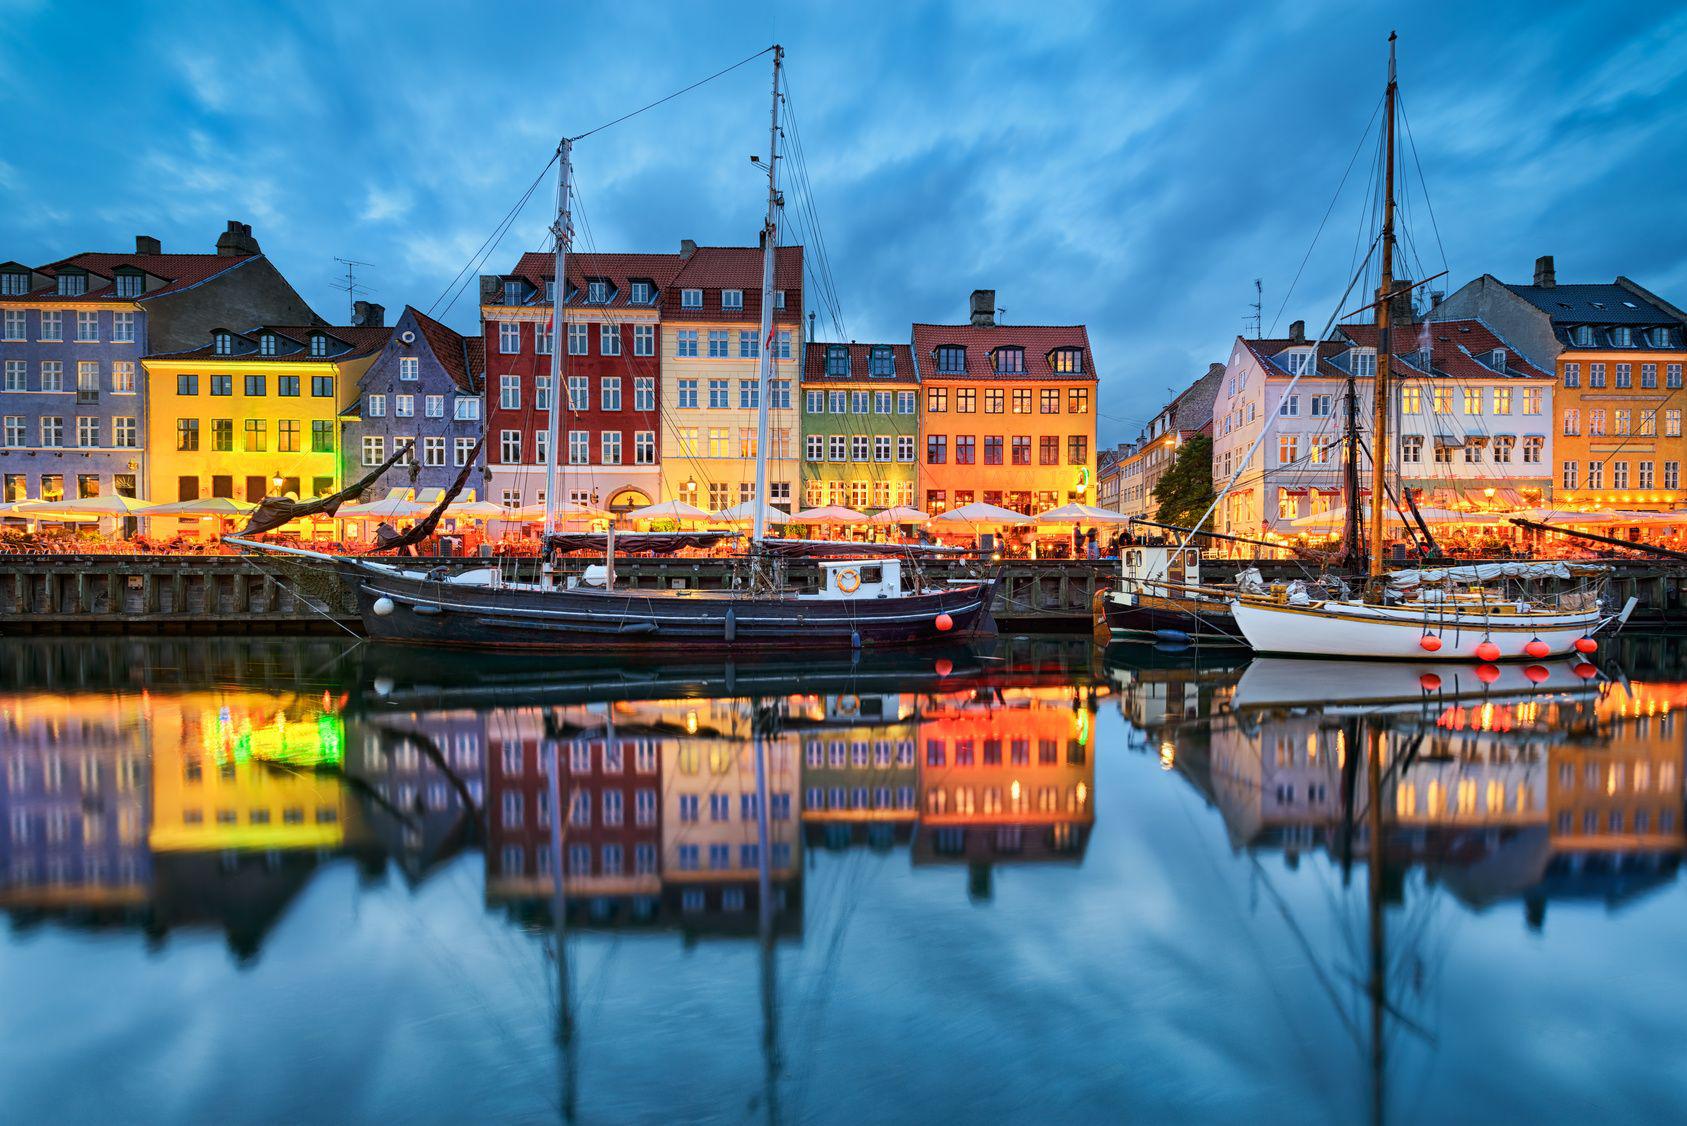 Copenaghen – Nyhavn, il porto, è uno dei punti centrali del turismo cittadino. Da qui partono le imbarcazioni che permettono la visita della città attraversandone i numerosi canali. Lo storico porto di Copenaghen ospita numerosi locali. Mapics - Fotolia